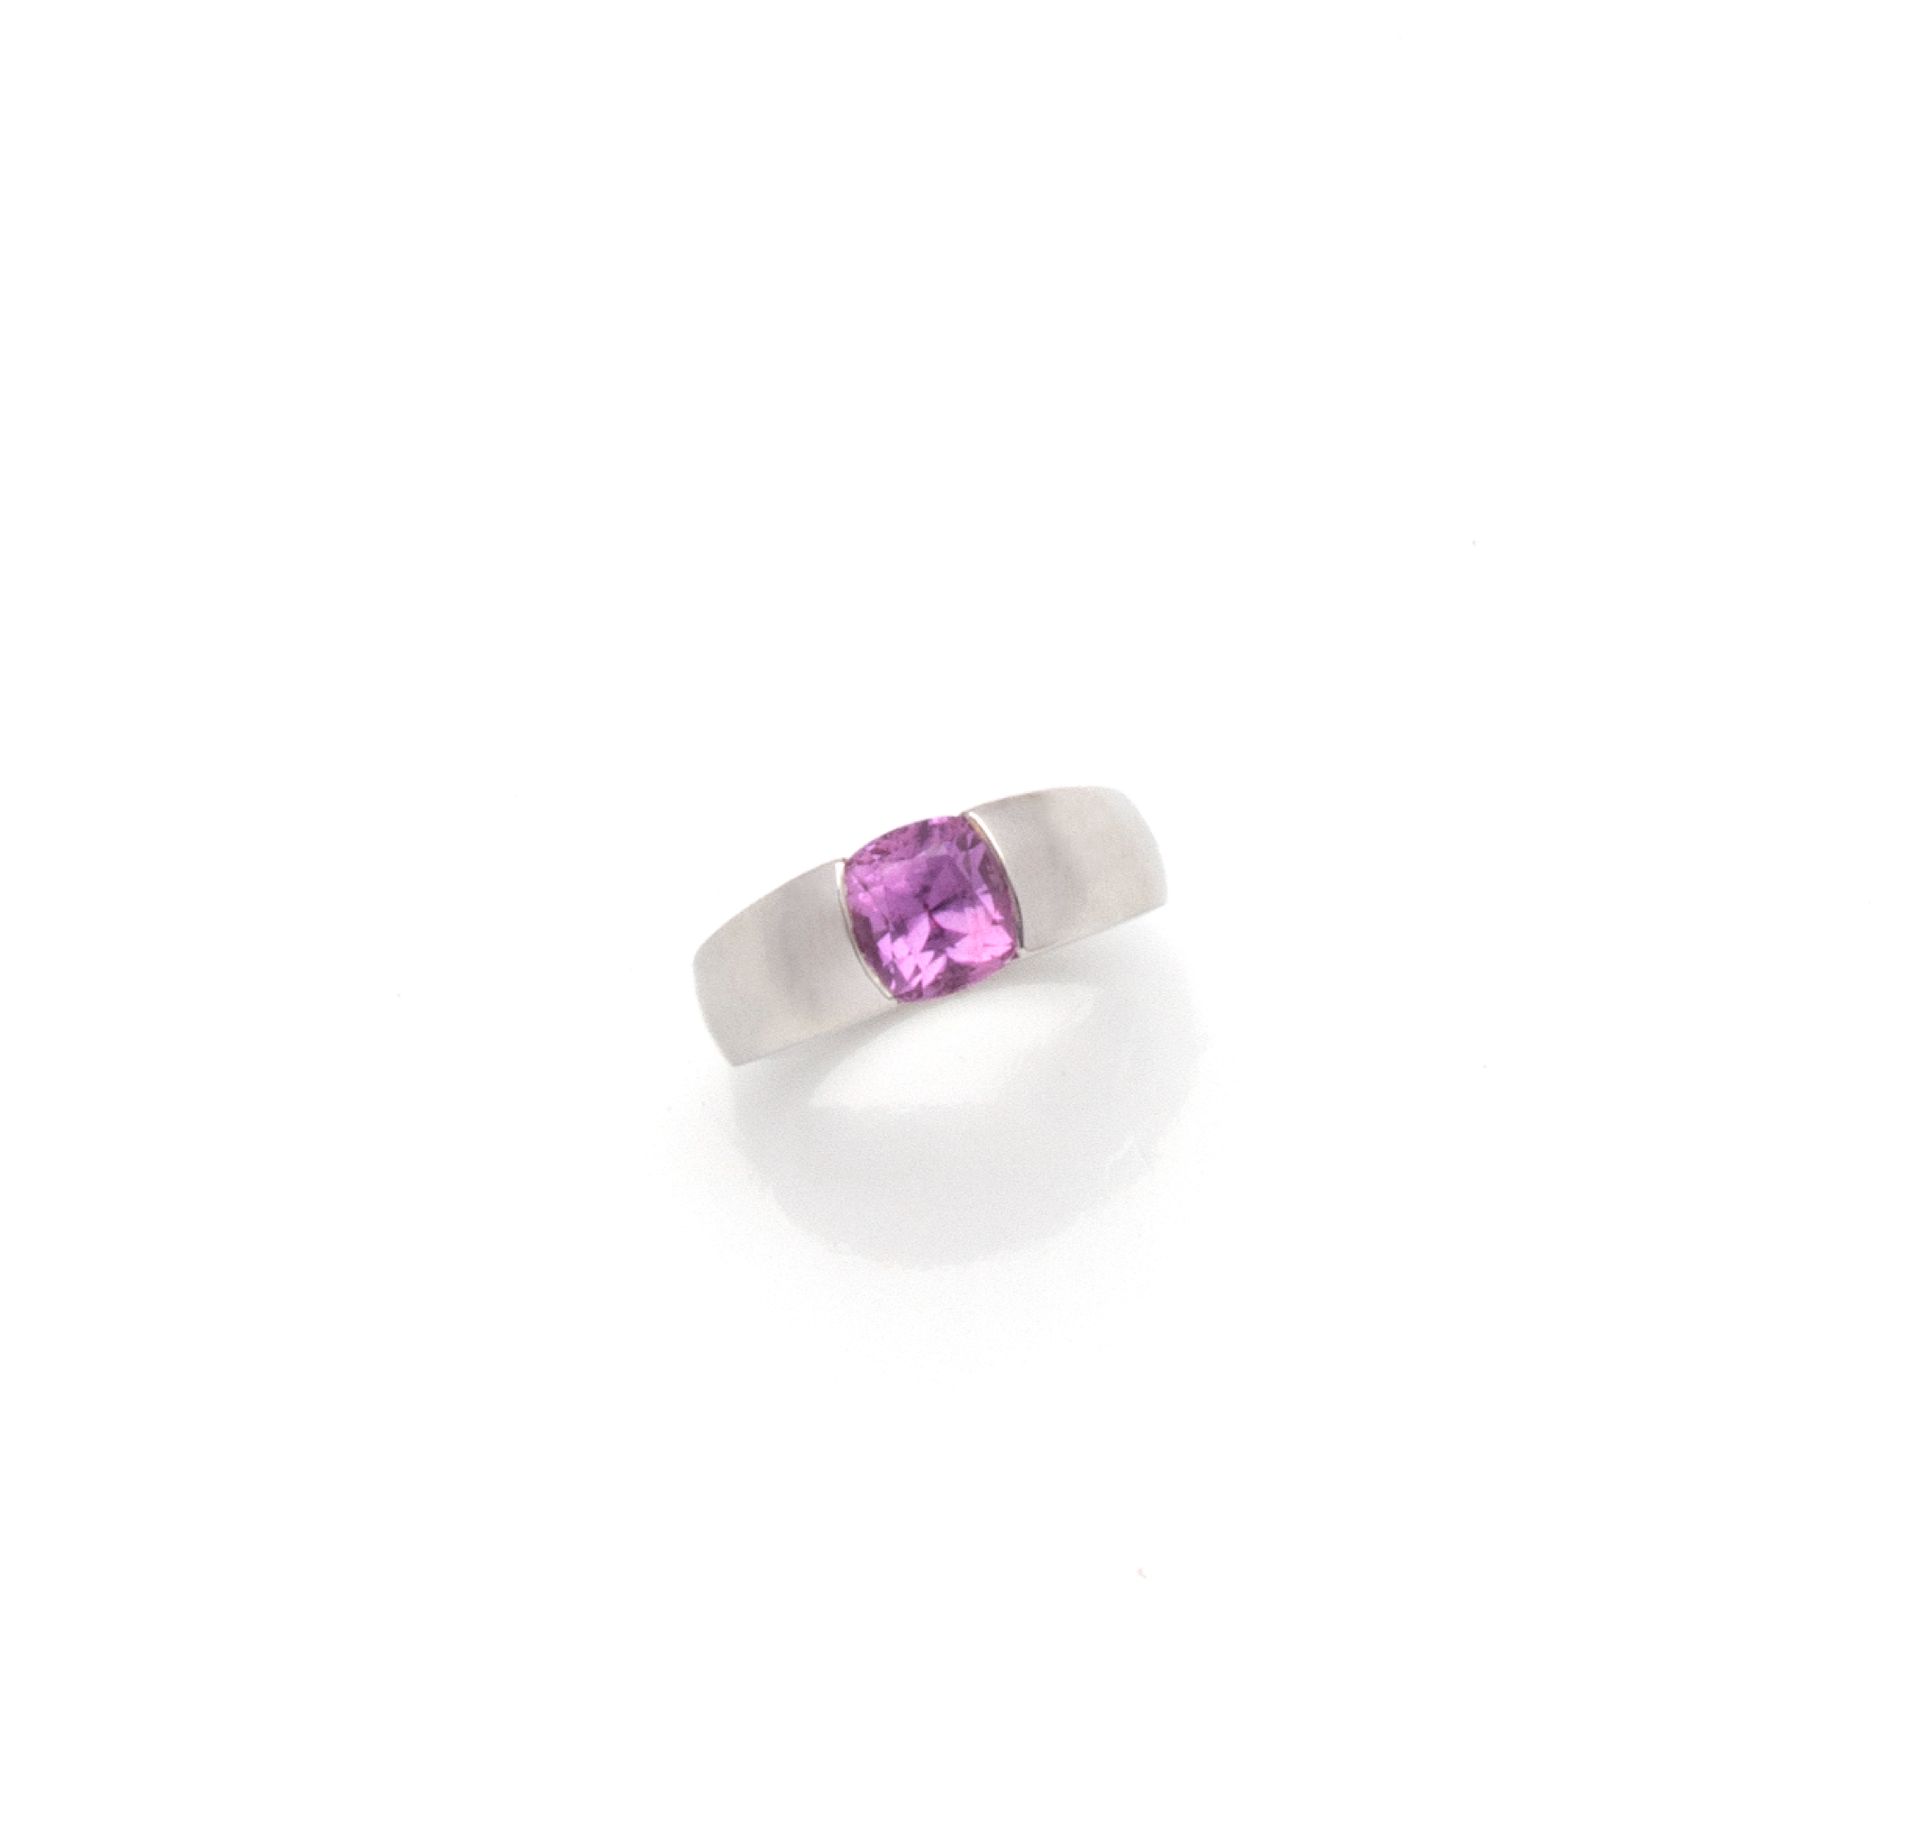 Null 布赫隆(BOUCHERON)

18K（750/1000）白金戒指，半封闭式镶嵌一颗枕形切割粉色蓝宝石。

已签名和评级。

以房子为标志

手指大小&hellip;